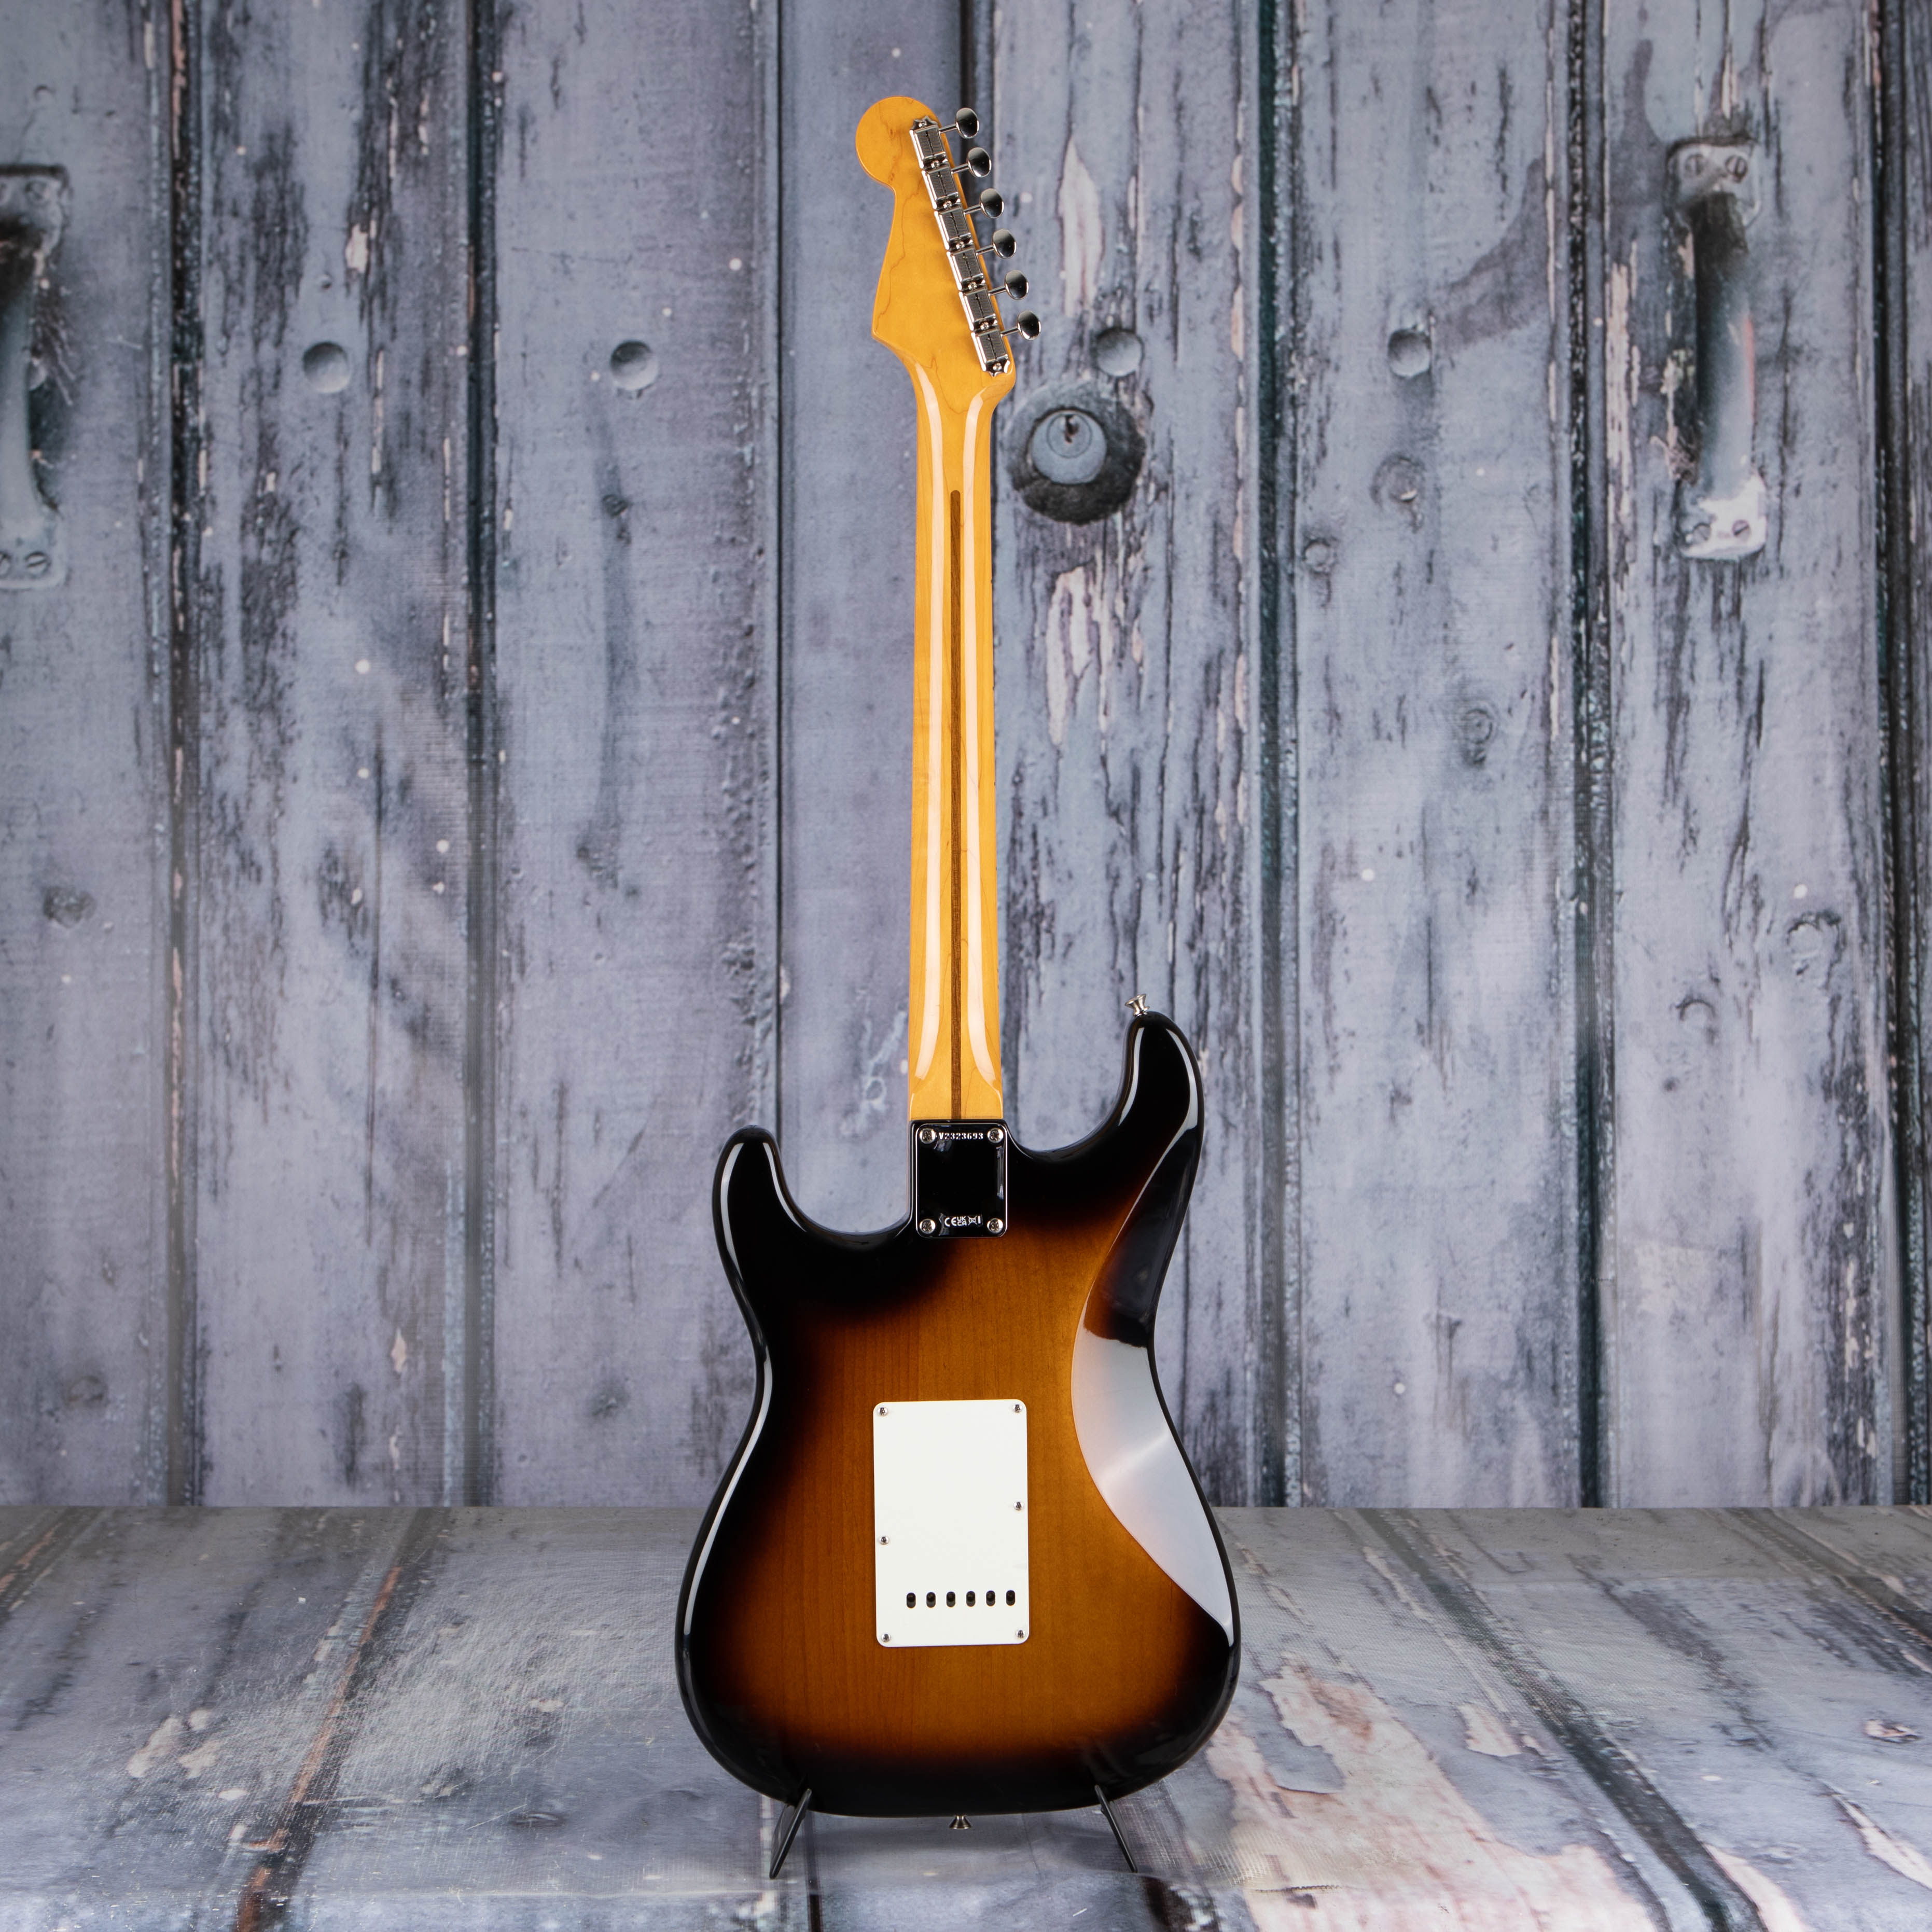 Fender American Vintage II 1957 Stratocaster Electric Guitar, 2-Color Sunburst, back